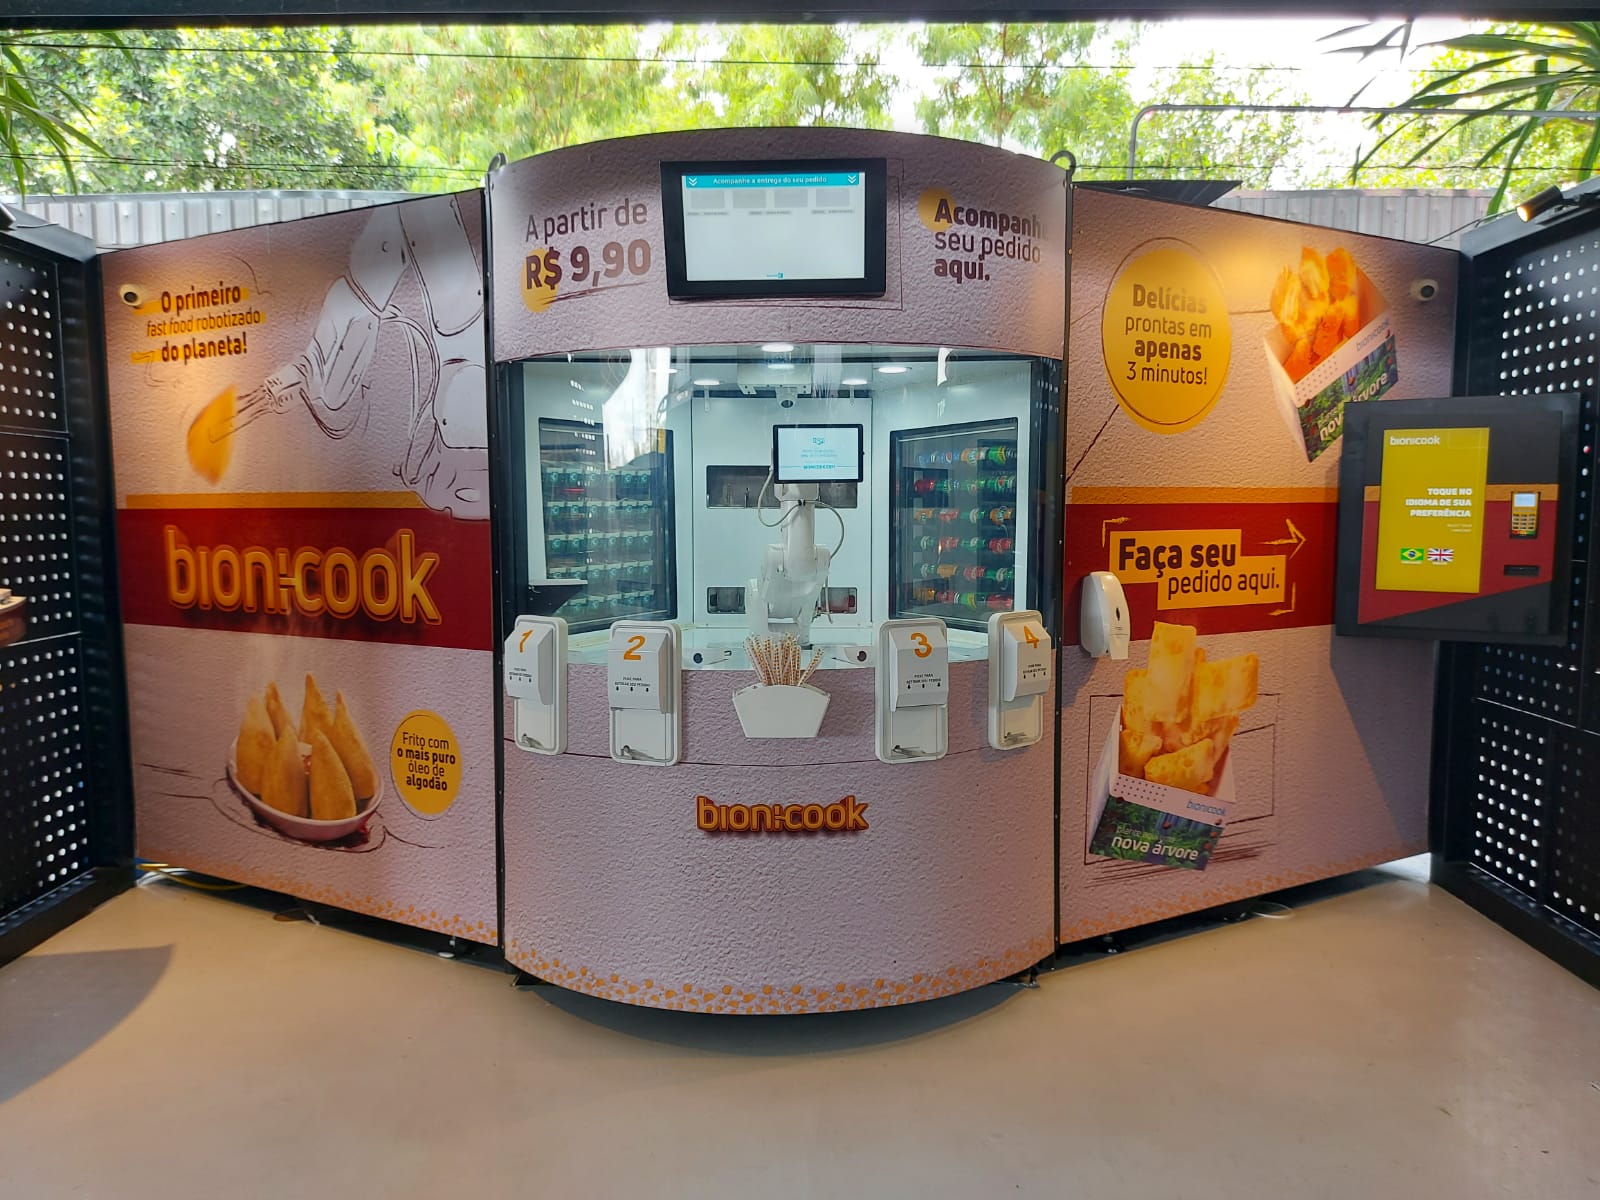 Bionicook, fast food brasileiro operado por robô, inicia expansão pelo país